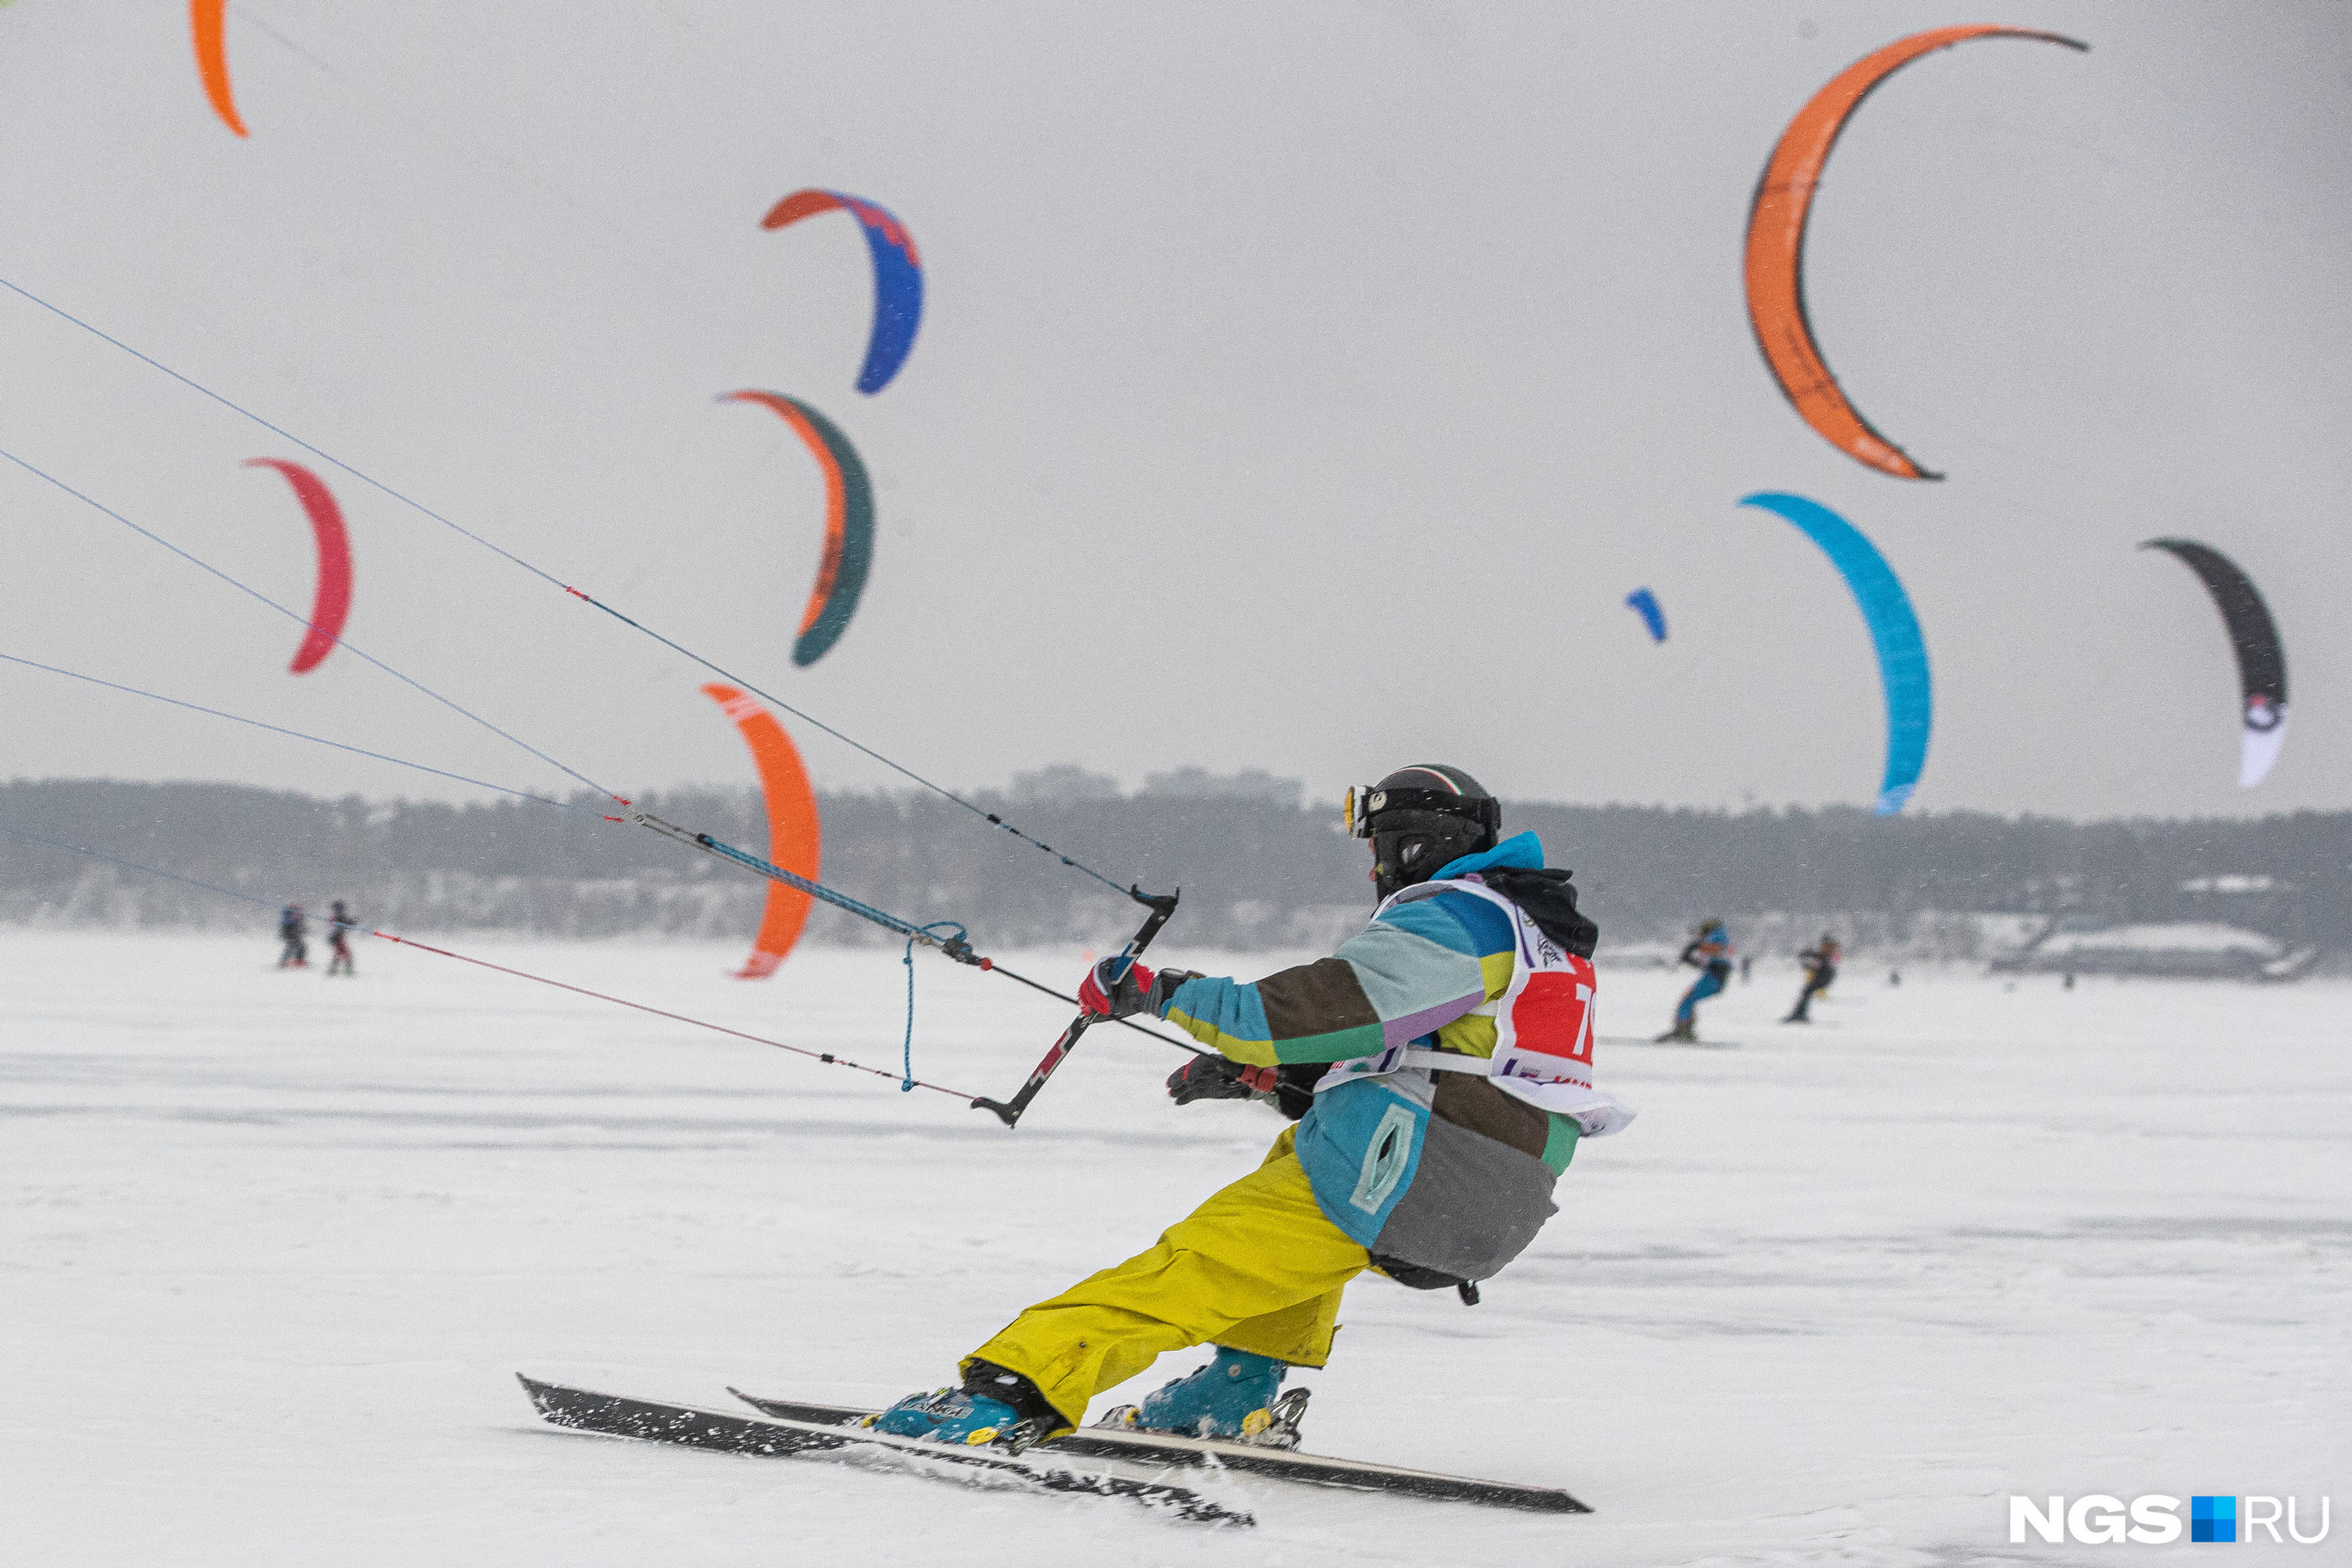 Соревнования проходят в нескольких дисциплинах: лыжная гонка, гонка на доске, фристайл, JKS и виндсерфинг